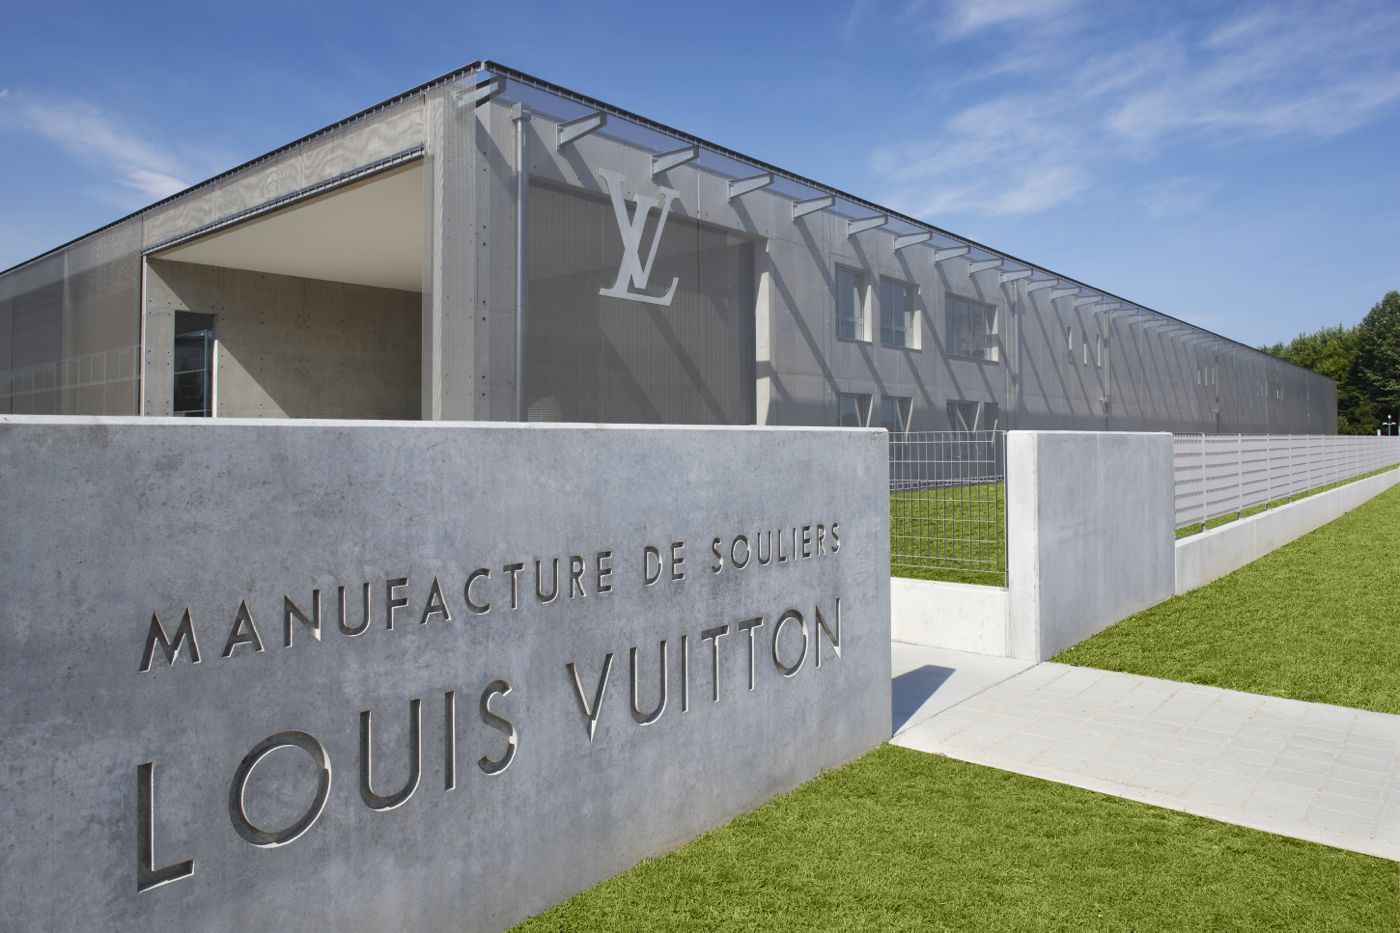 Les Journées Particulières Louis Vuitton - La Manufacture de Souliers de Fisso d' Artico